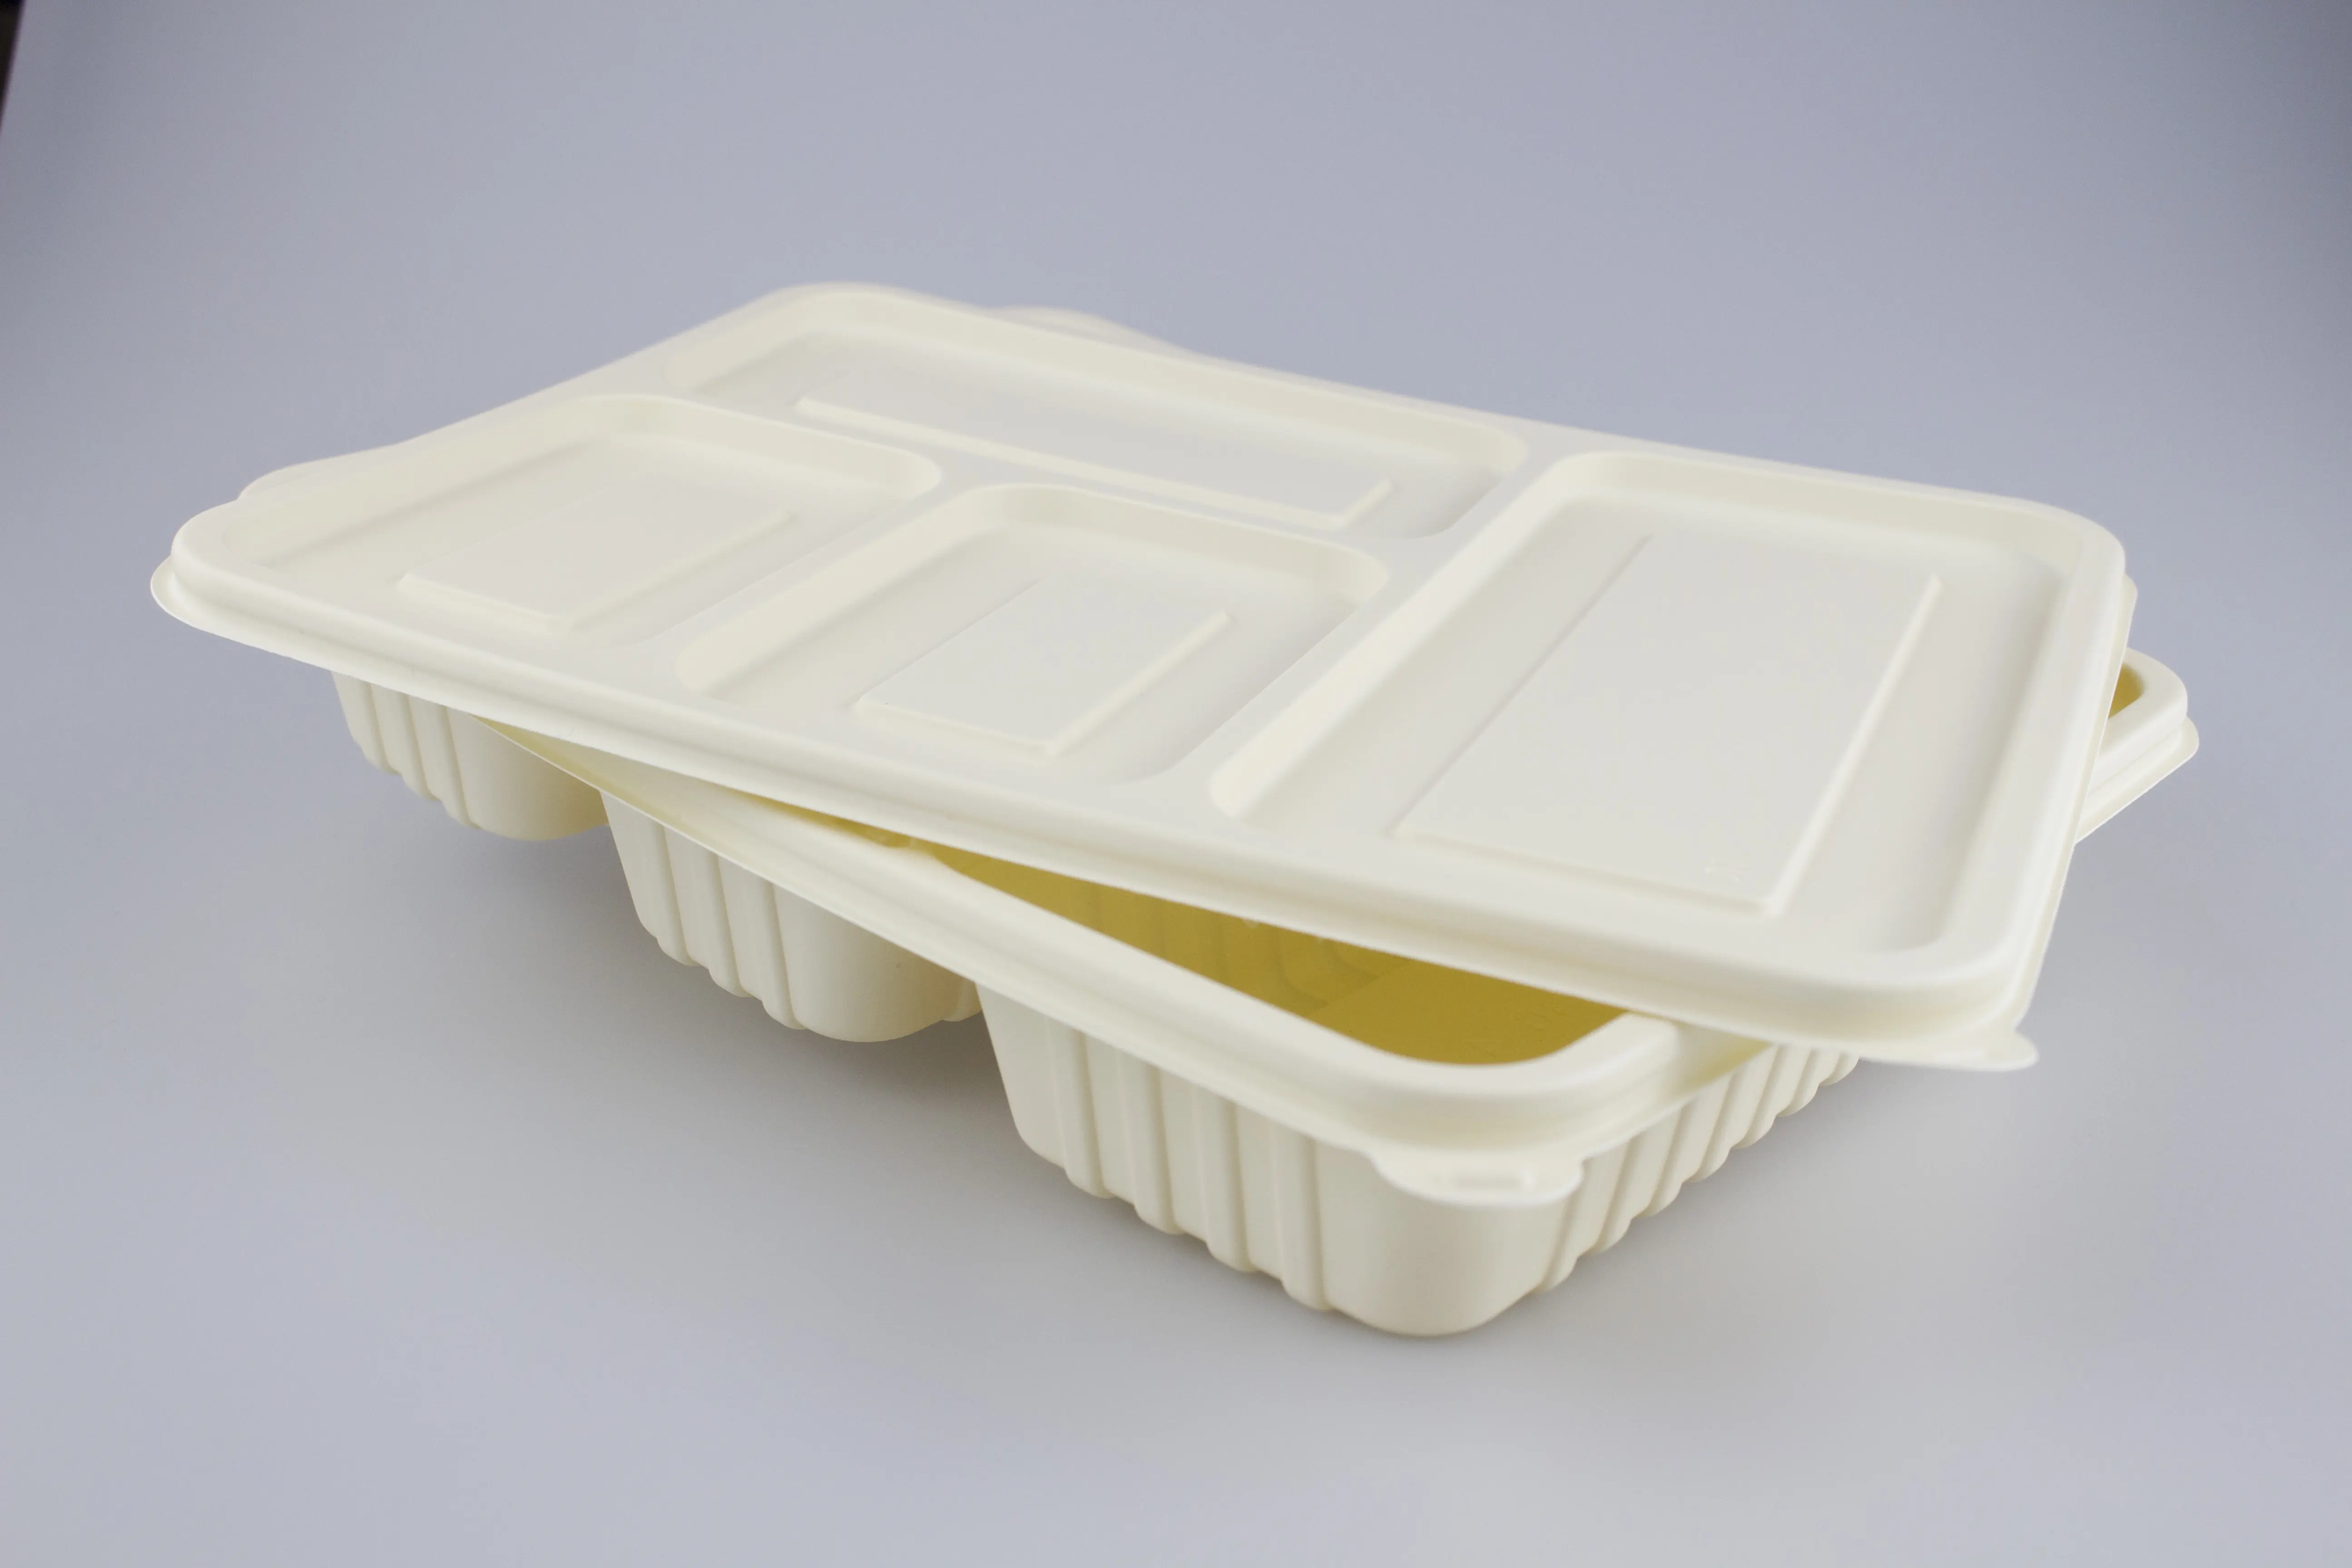 กล่องใส่อาหารแบบใช้แล้วทิ้งกล่องใส่อาหารกลางวันแบบสั่งทำกล่องใส่แป้งข้าวโพด